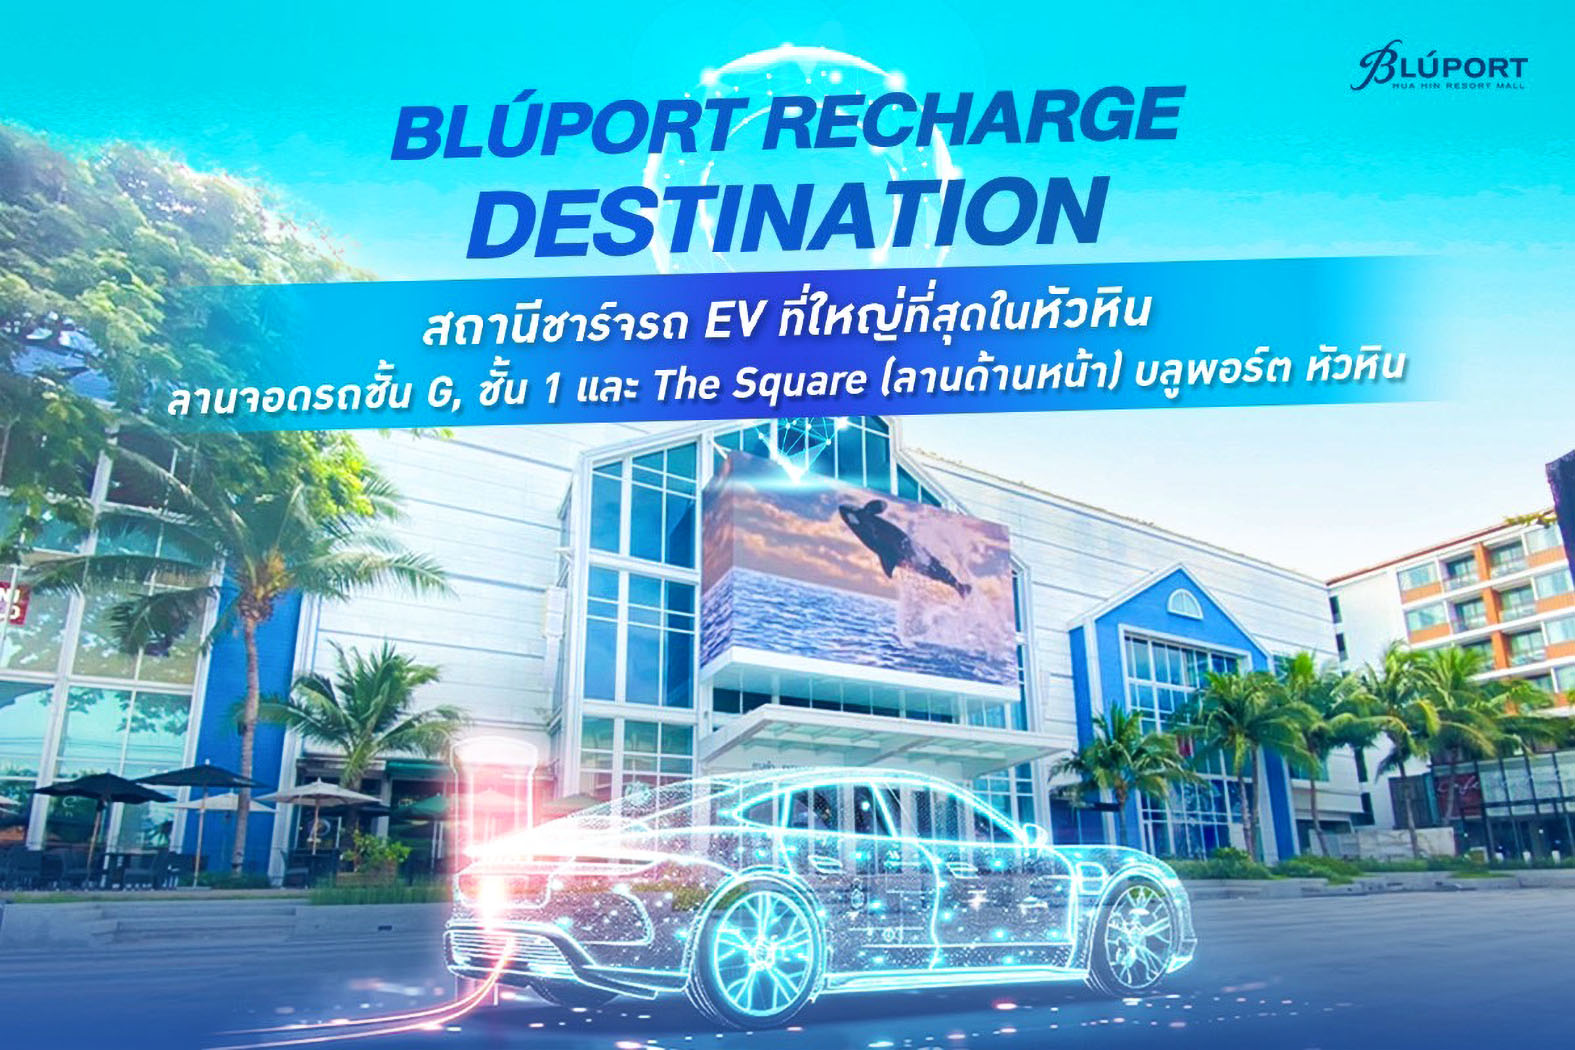 ประจวบคีรีขันธ์-“บลูพอร์ต หัวหิน” เปิดตัว Bluport Recharge Destination สถานีชาร์จรถยนต์ไฟฟ้าใหญ่ที่สุดของประจวบฯ